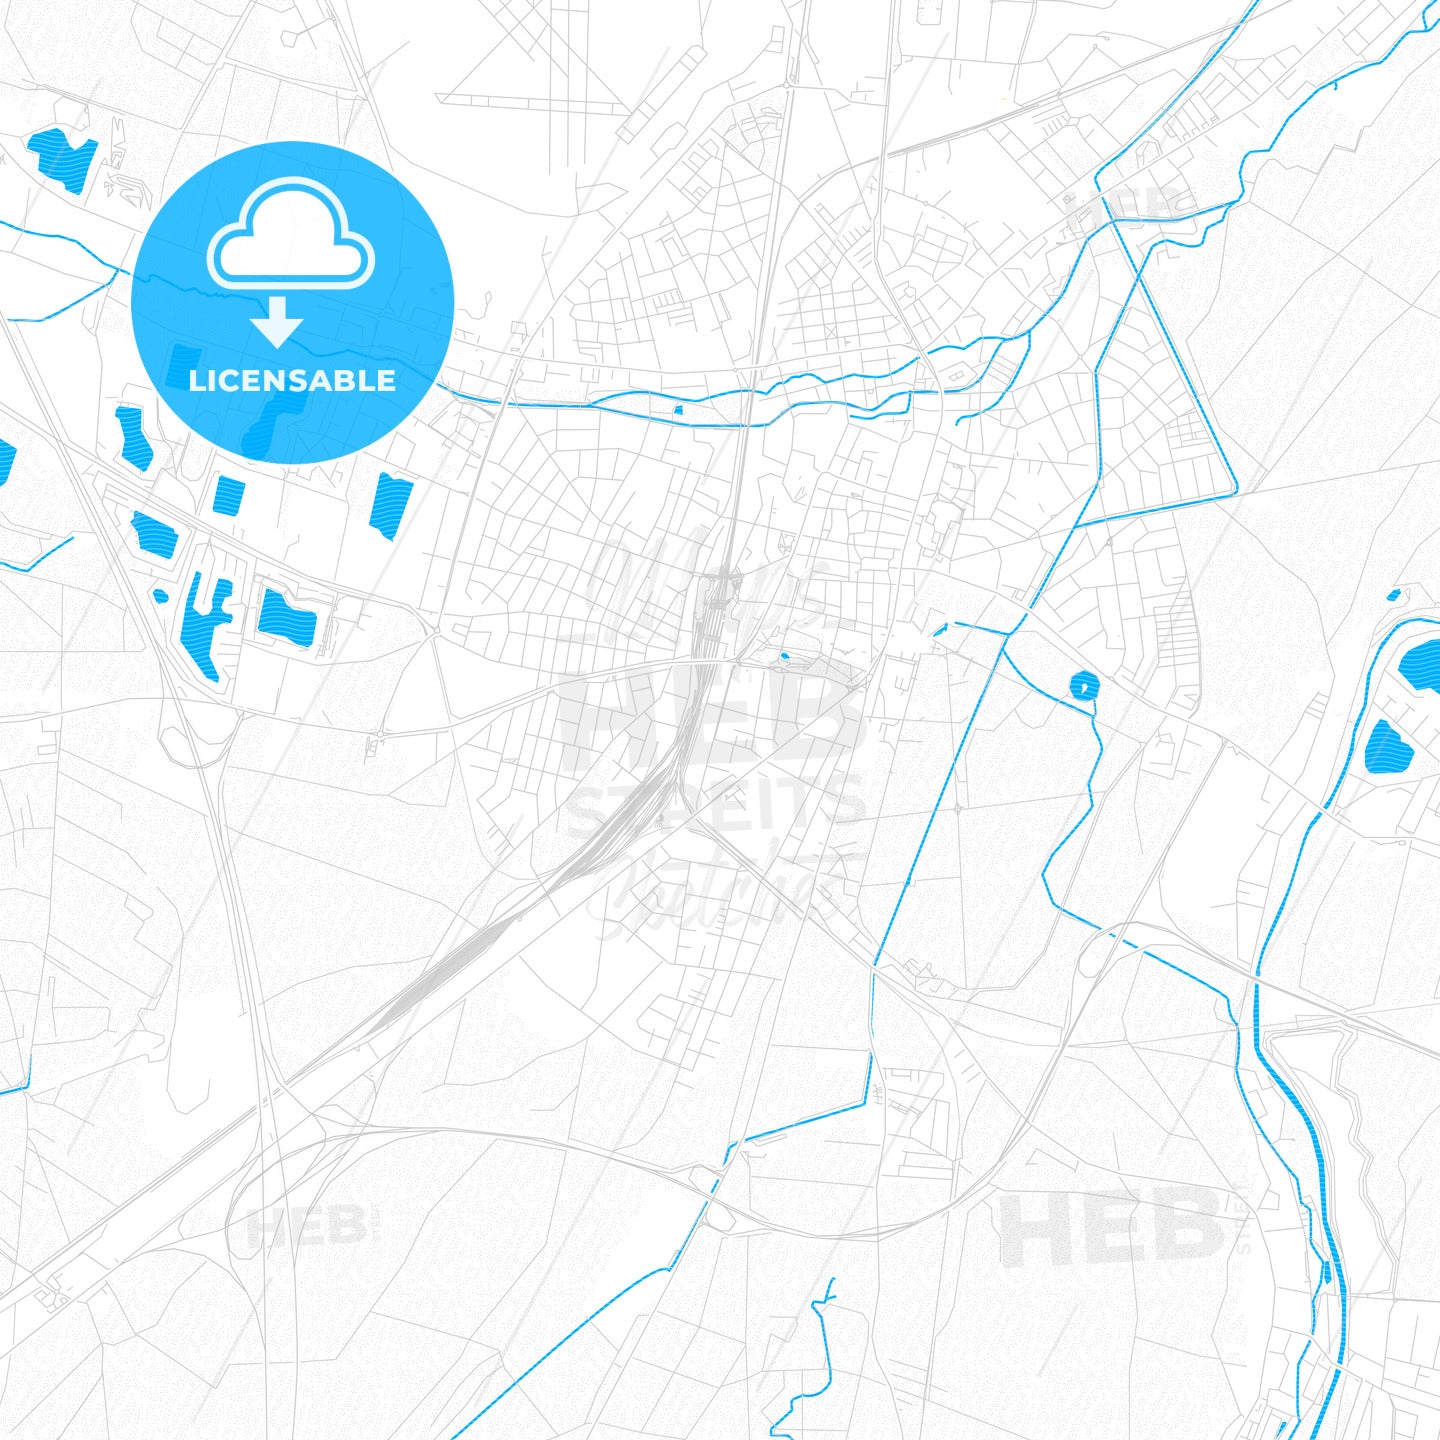 Wiener Neustadt, Austria PDF vector map with water in focus